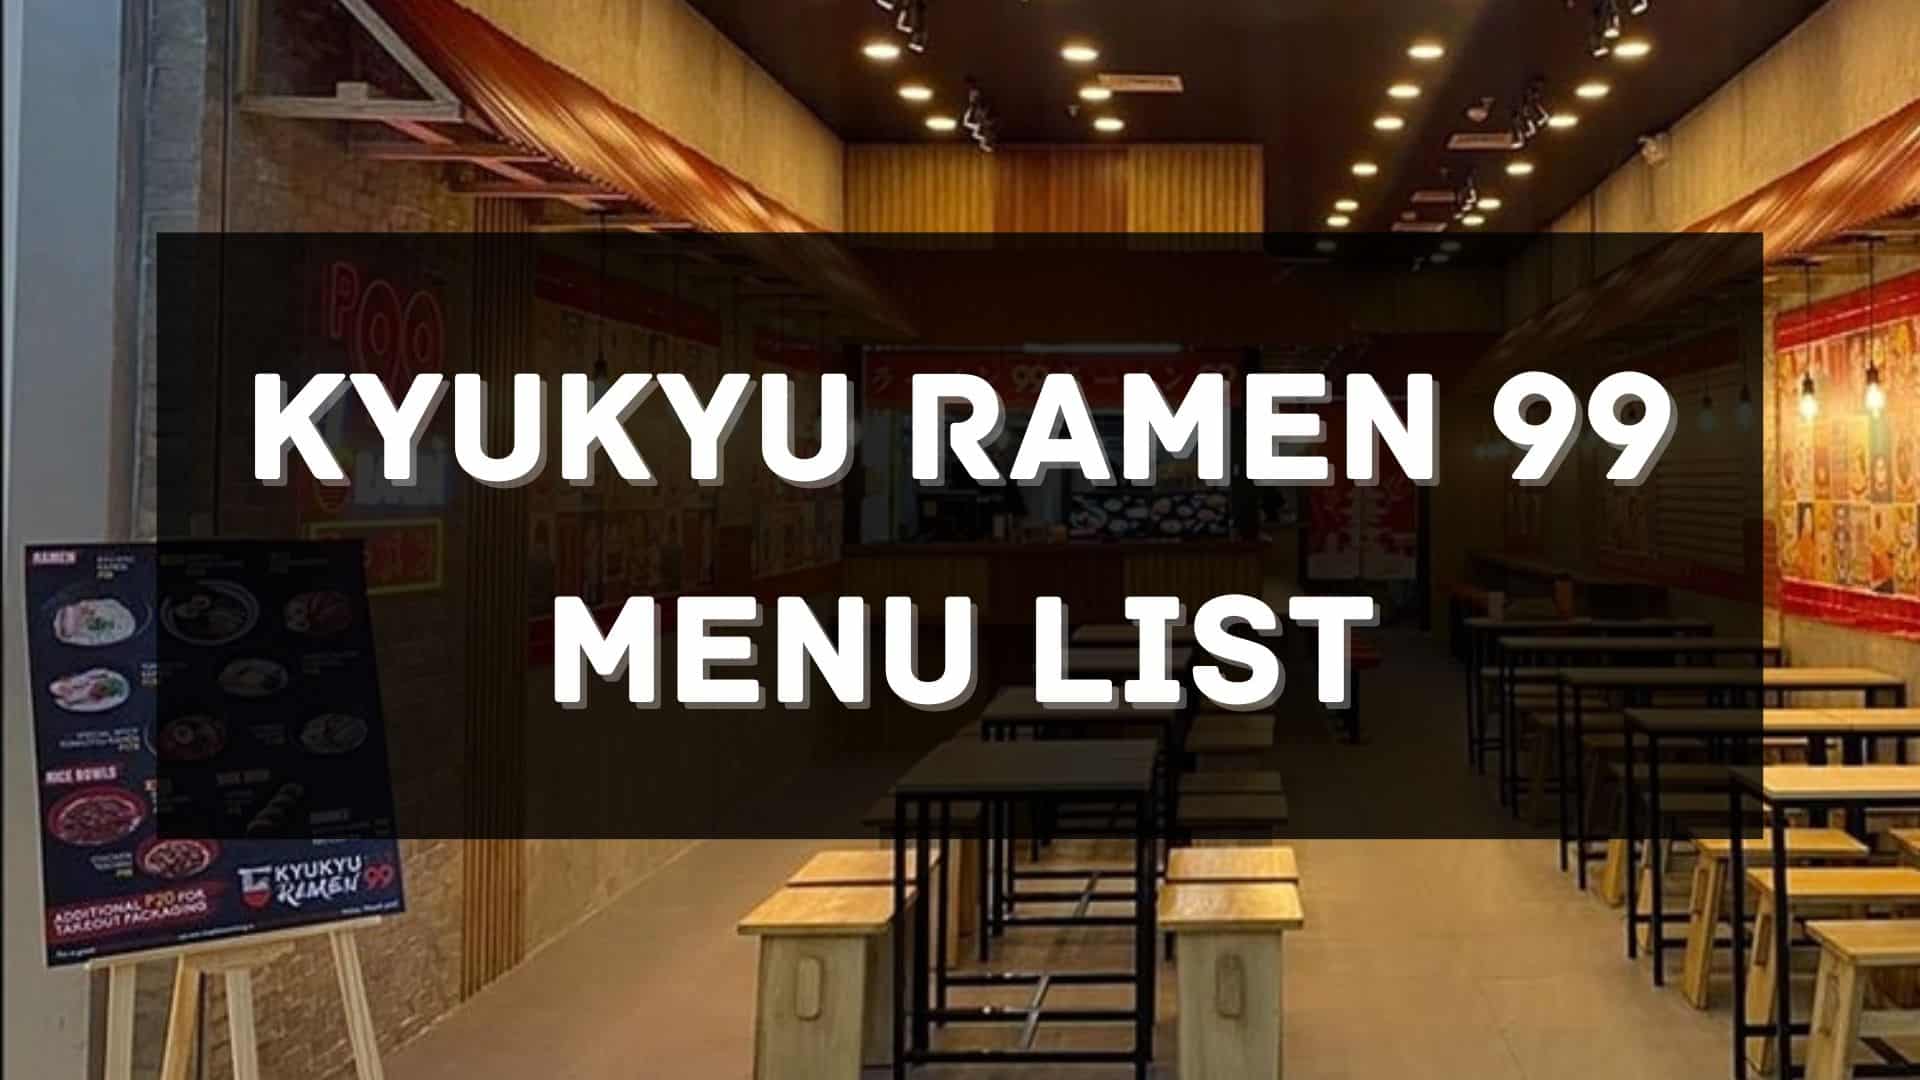 kyukyu ramen 99 menu prices philippines